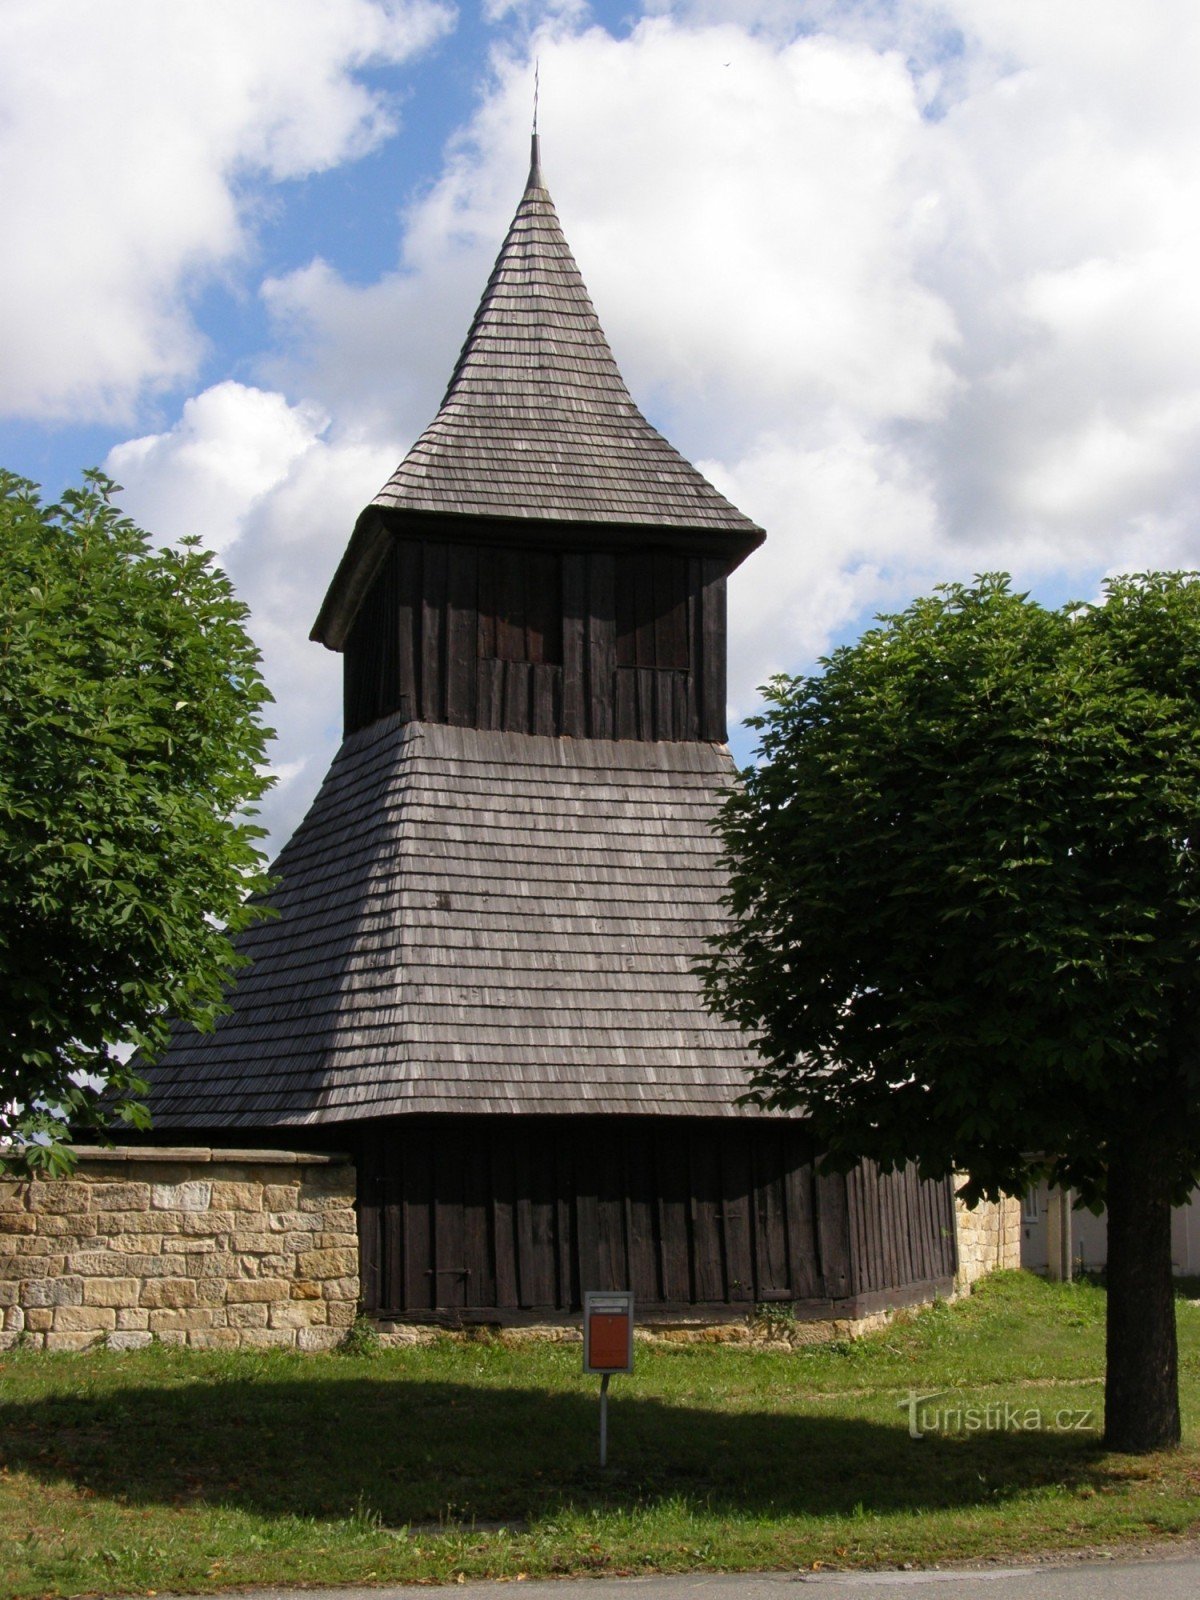 Vysočany - biserica de lemn Sf. Piețe cu clopotniță de lemn